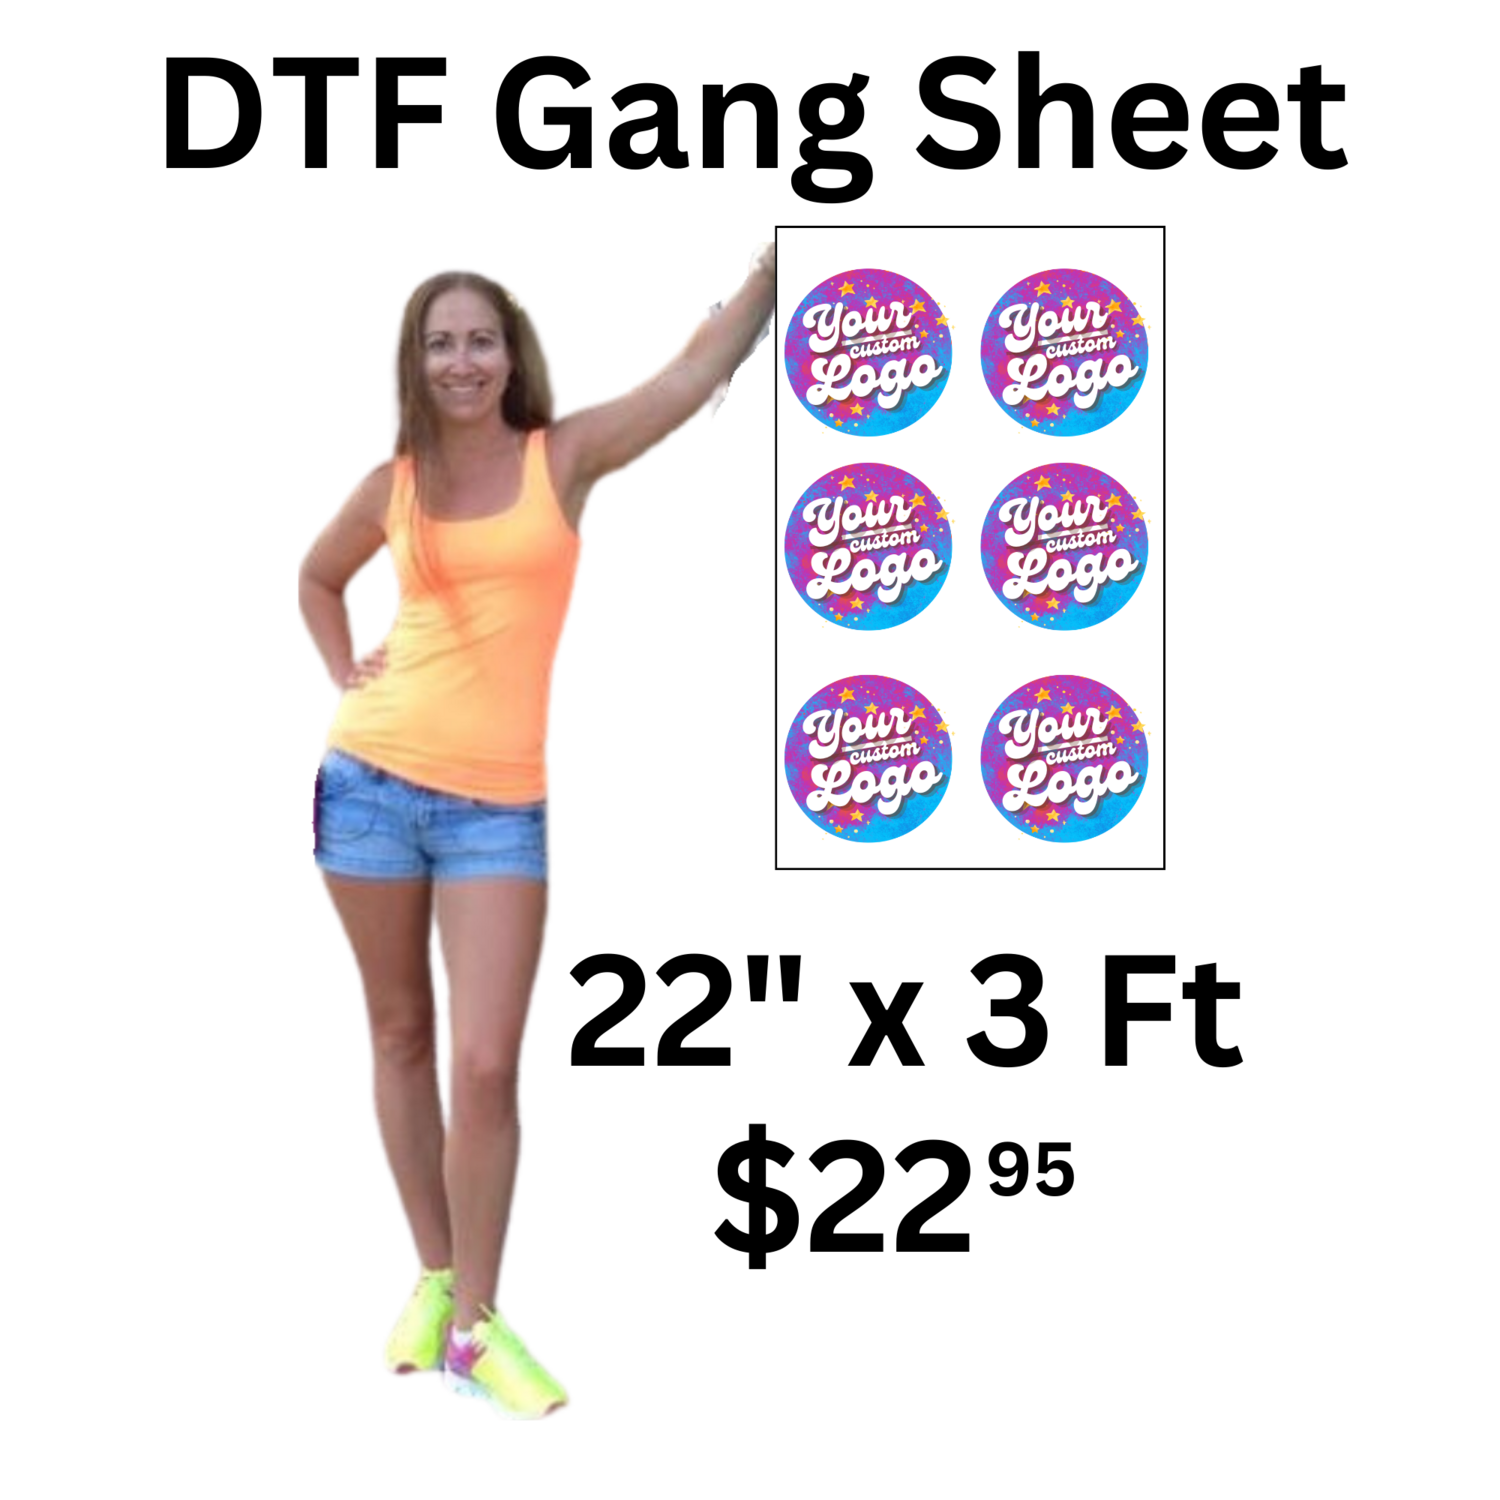 Custom DTF Gang Sheet 22 in x 3 ft